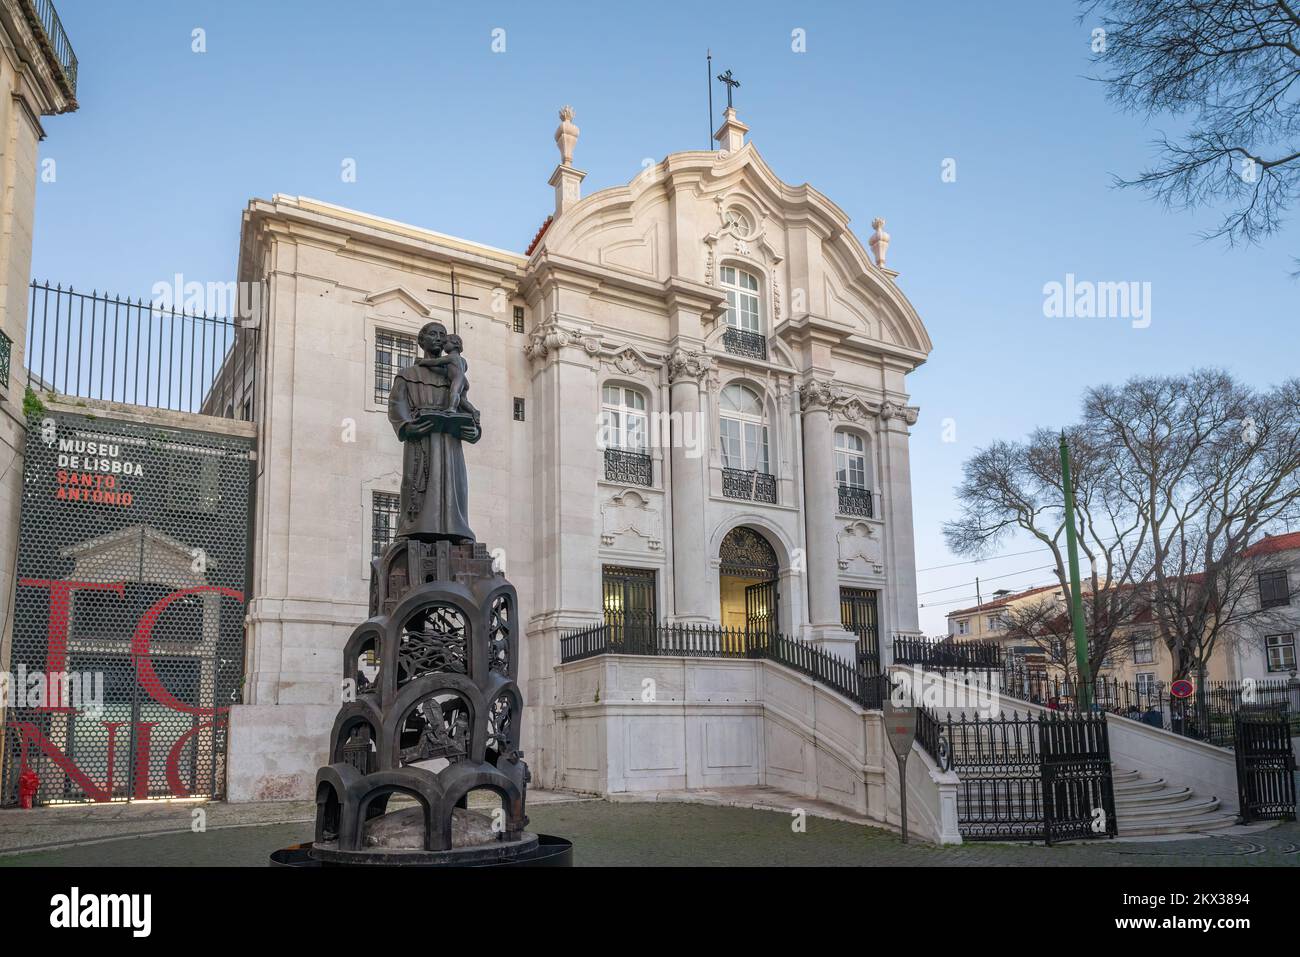 Statue des Heiligen Antonius vor der Kirche des Heiligen Antonius (Igreja Santo Antonio de Lisboa) - Lissabon, Portugal Stockfoto